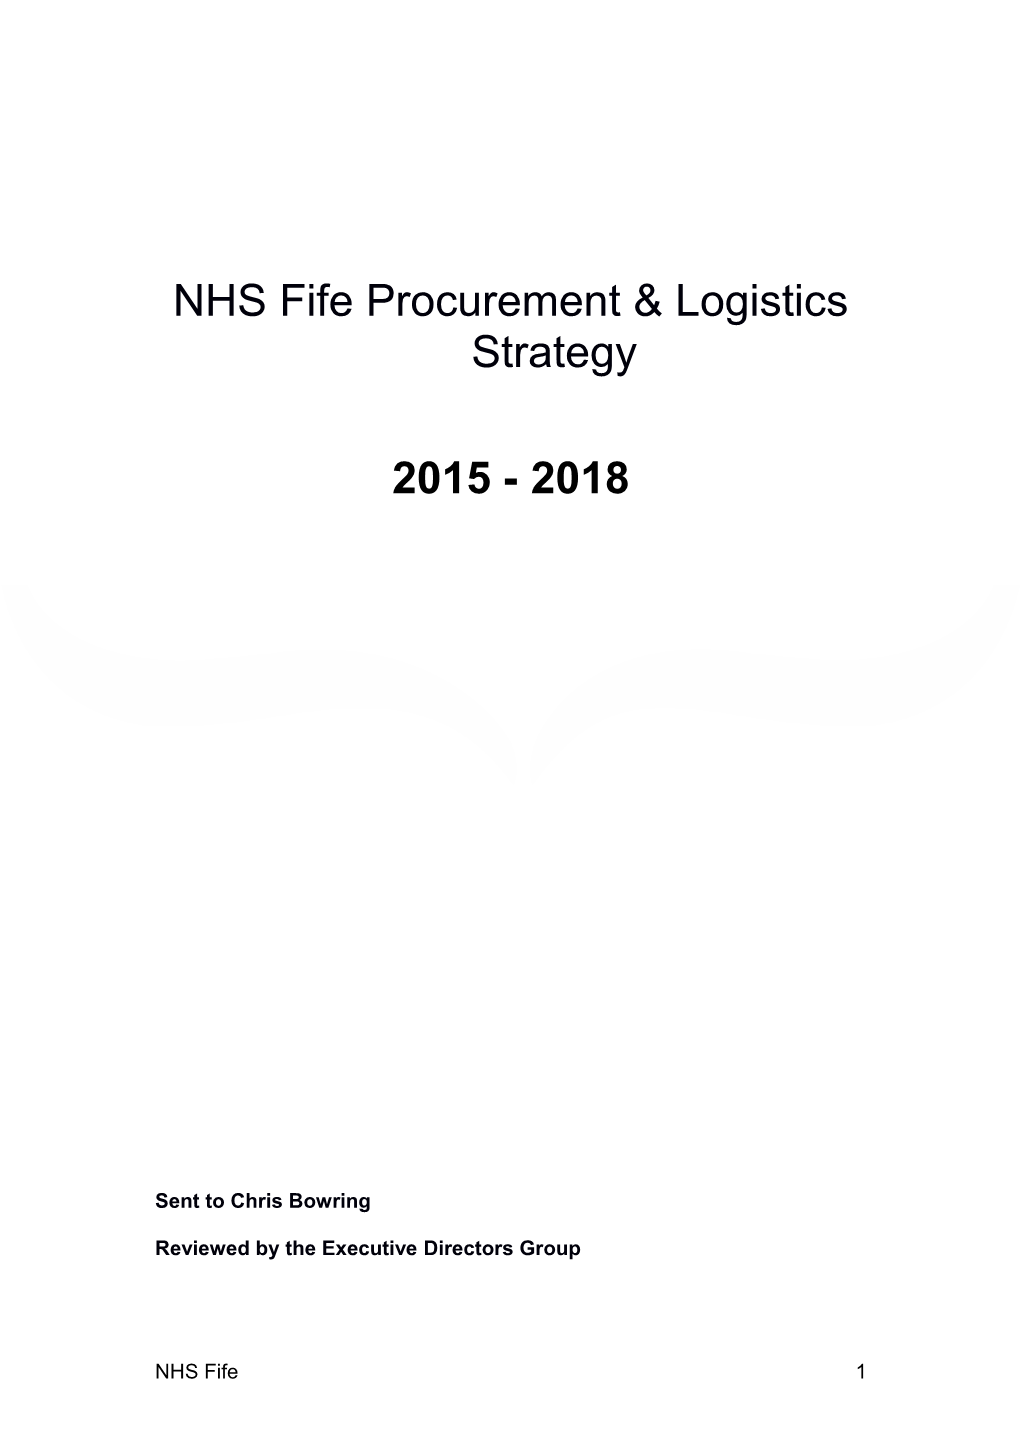 NHS Fife Procurement & Logistics Strategy